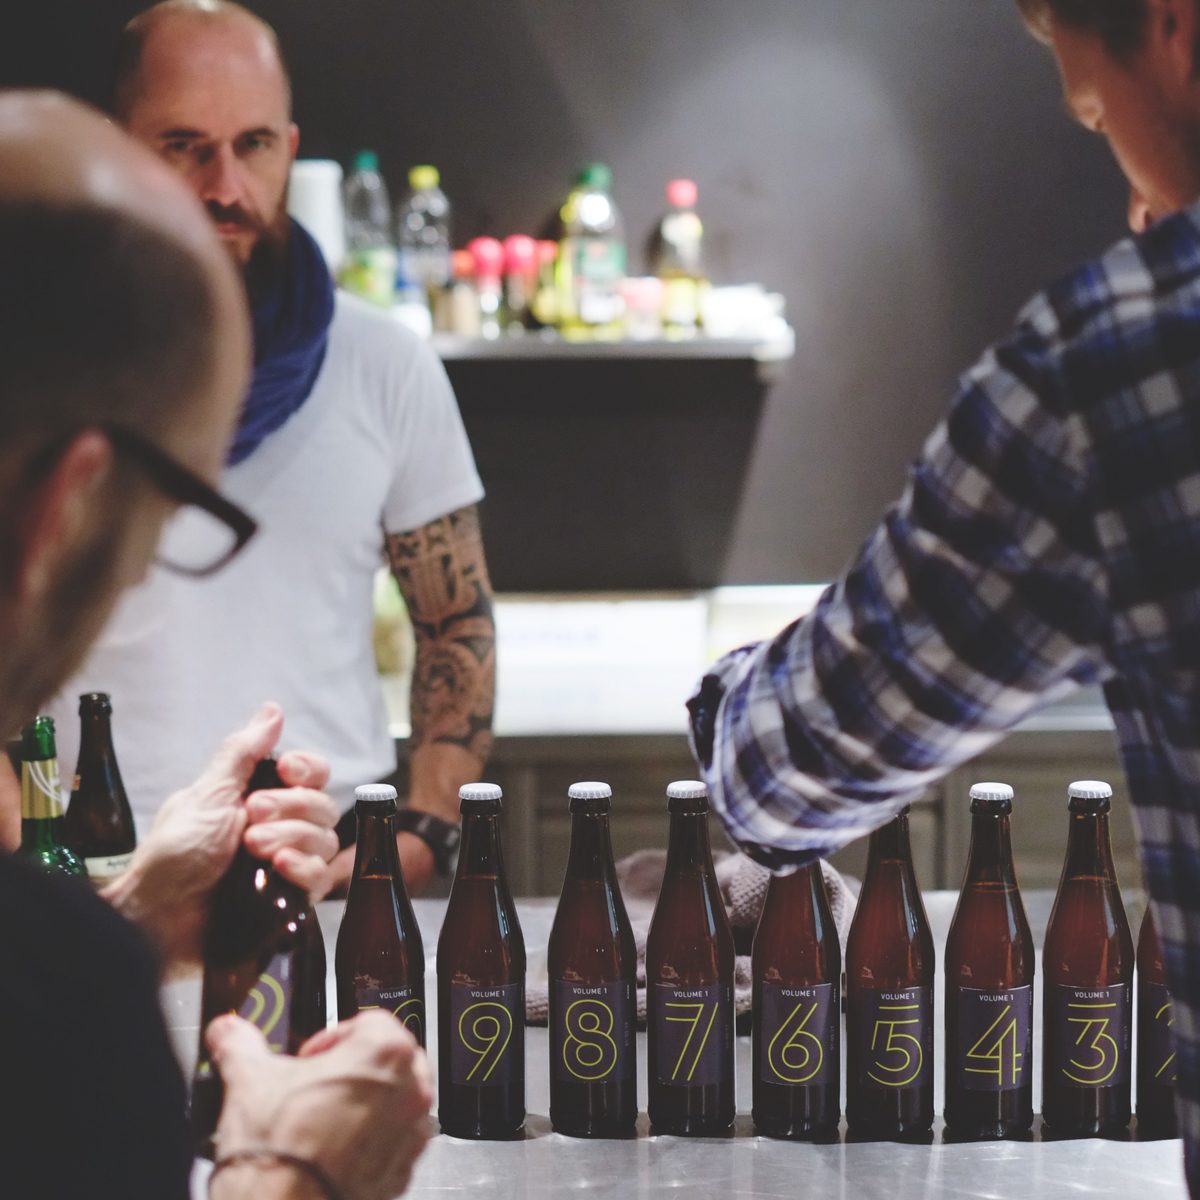 KISKA graphic designer, desktop publisher and product designer apply labels to KISKA-brewed beer